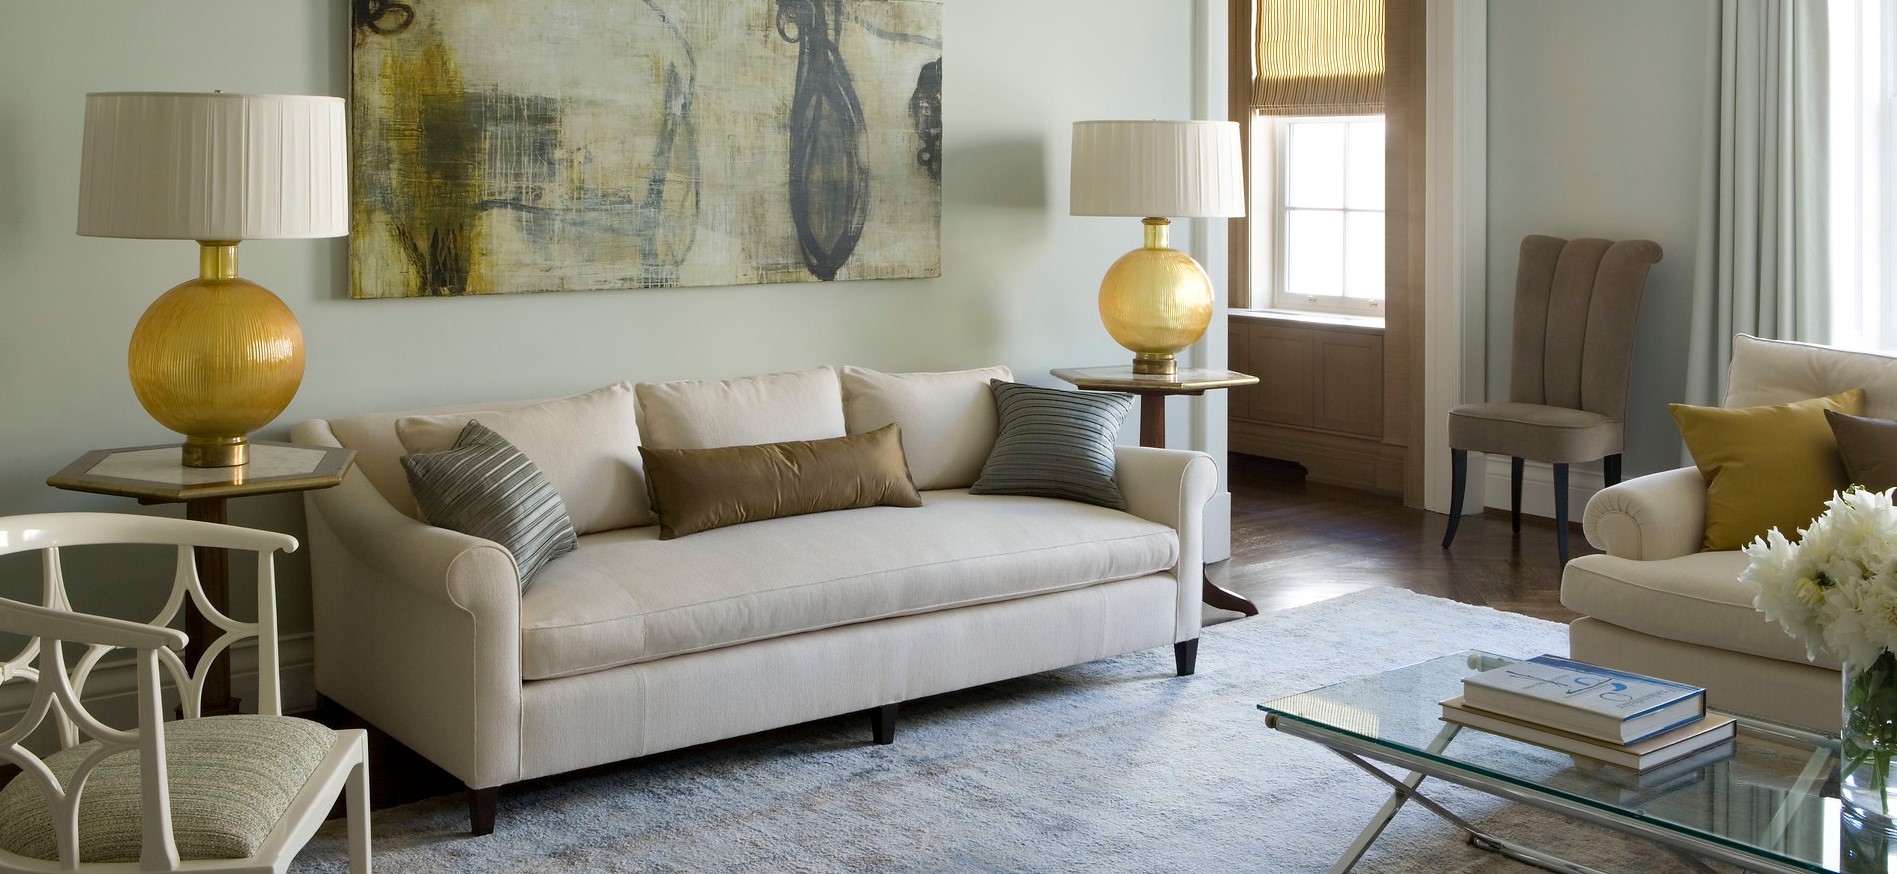 Обивка дивана должна по цвету гармонировать с остальной мебелью в гостиной